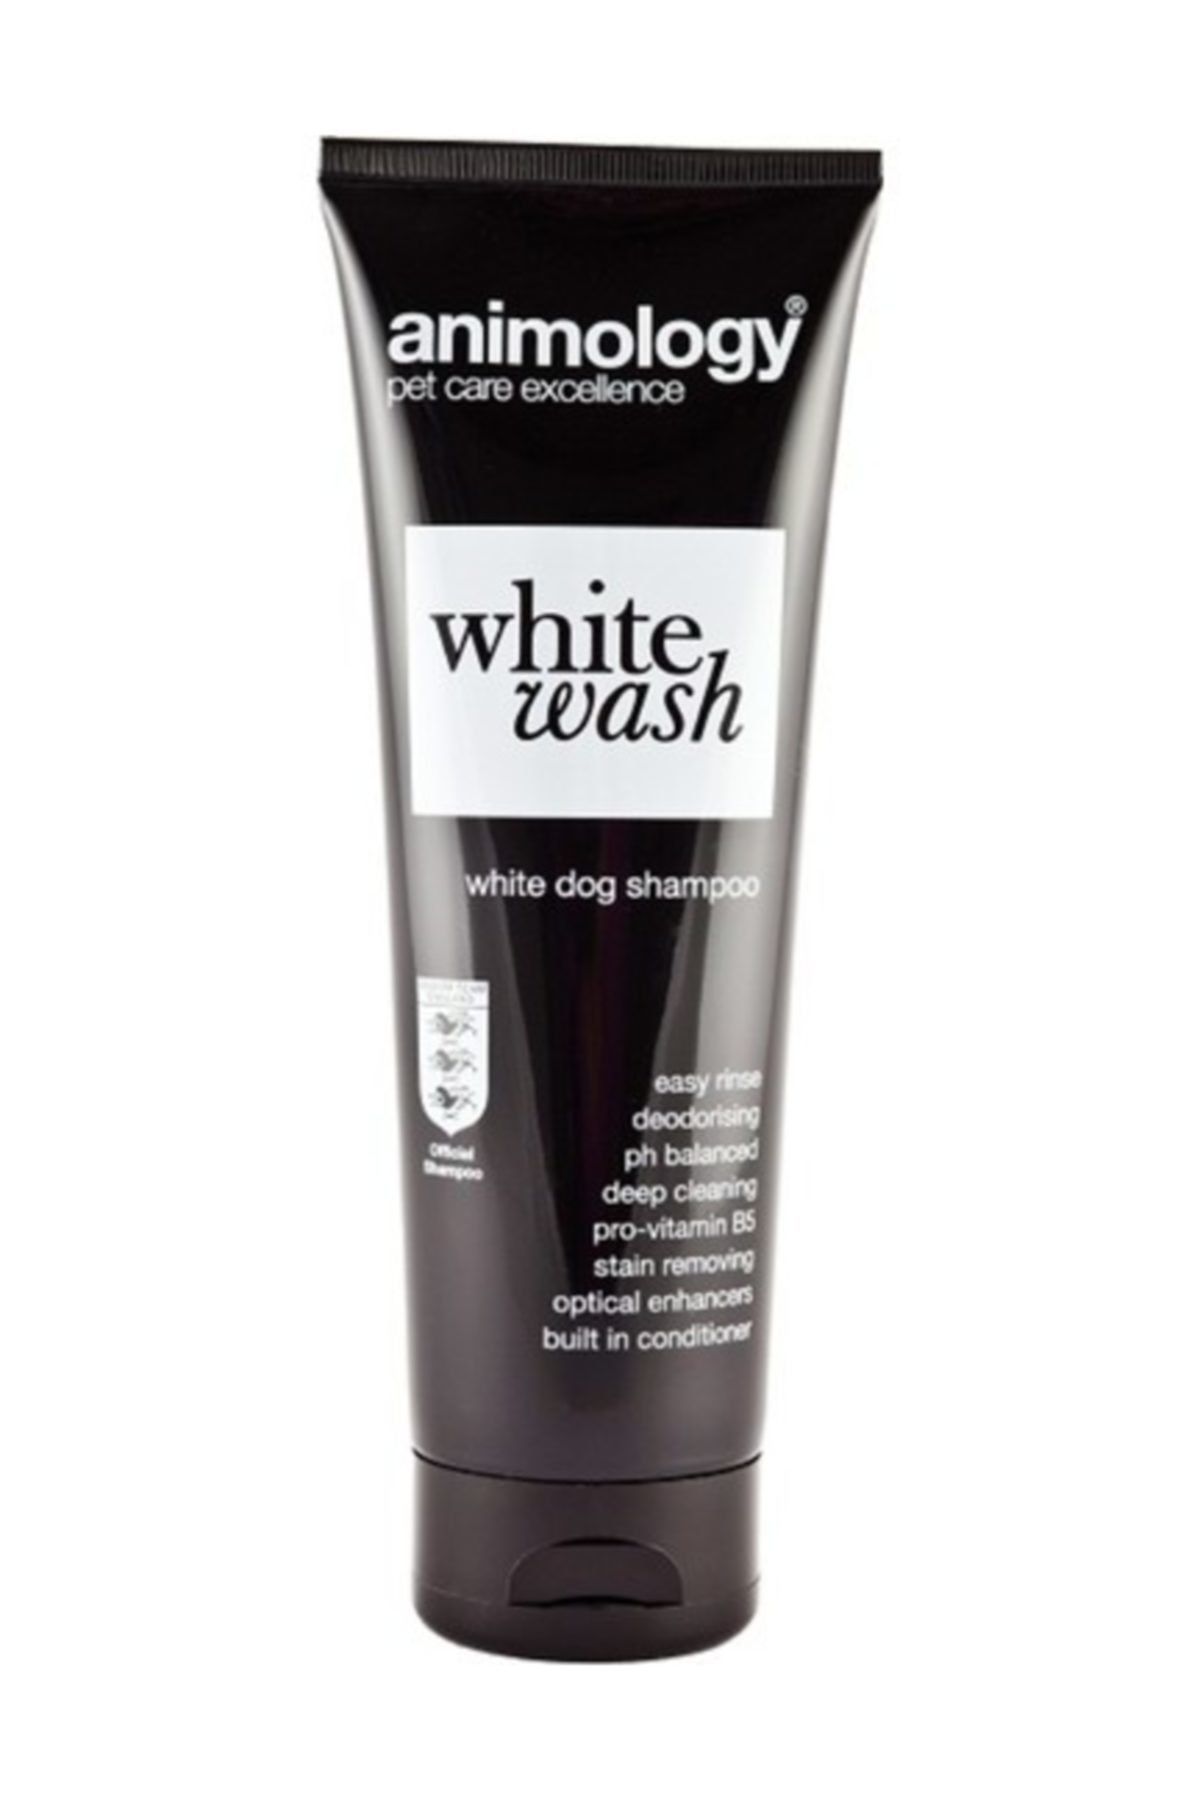 Animology White Wash Beyaz Tüylü Köpek Şampuanı 250 Ml